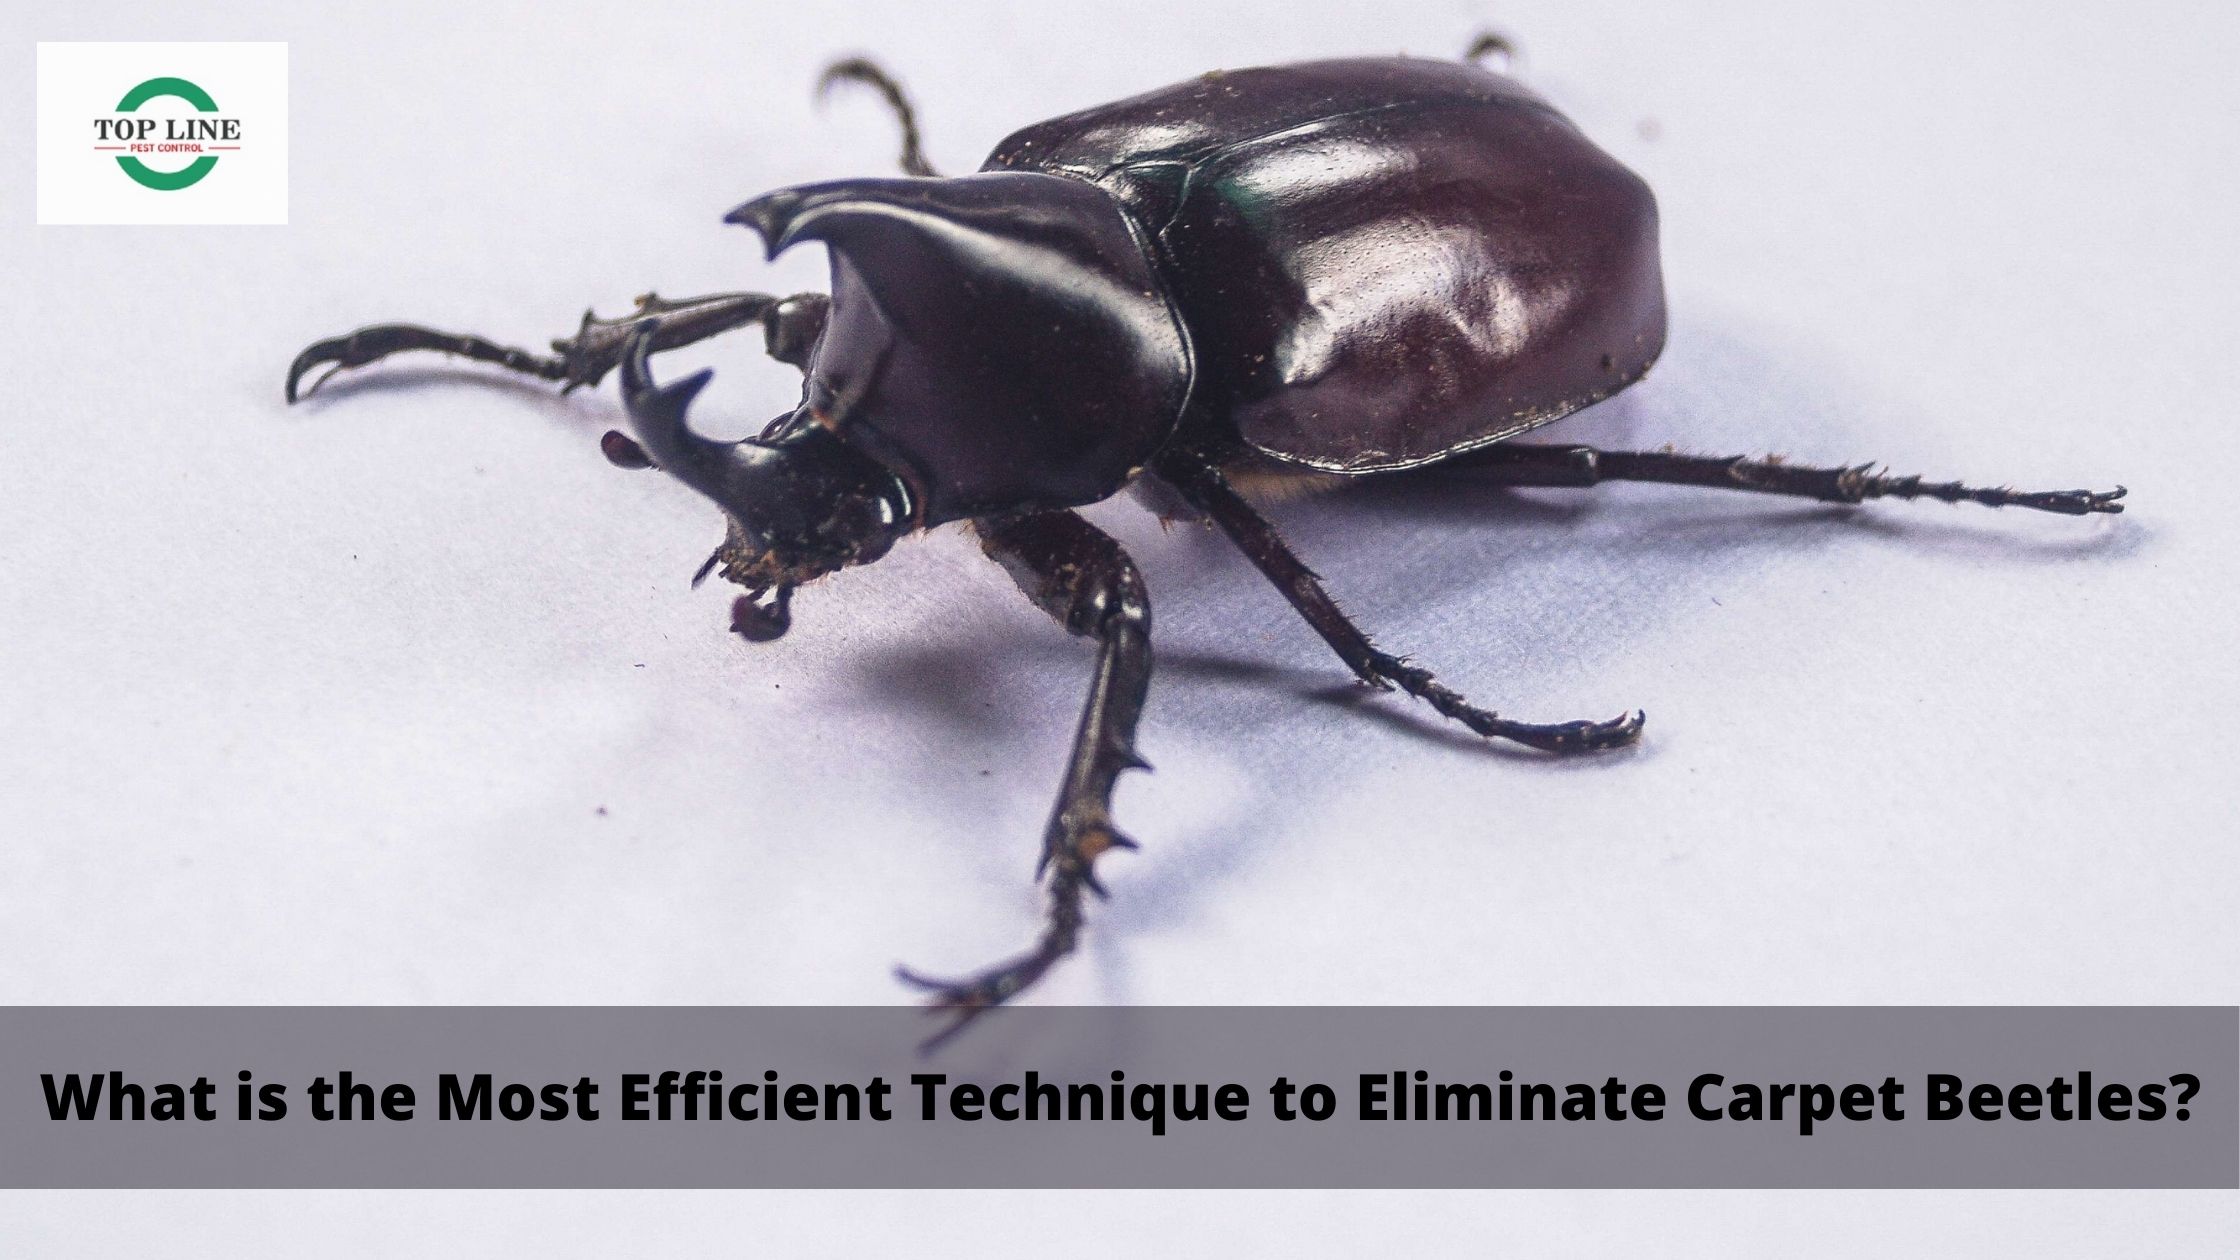 Technique to Eliminate Carpet Beetles?